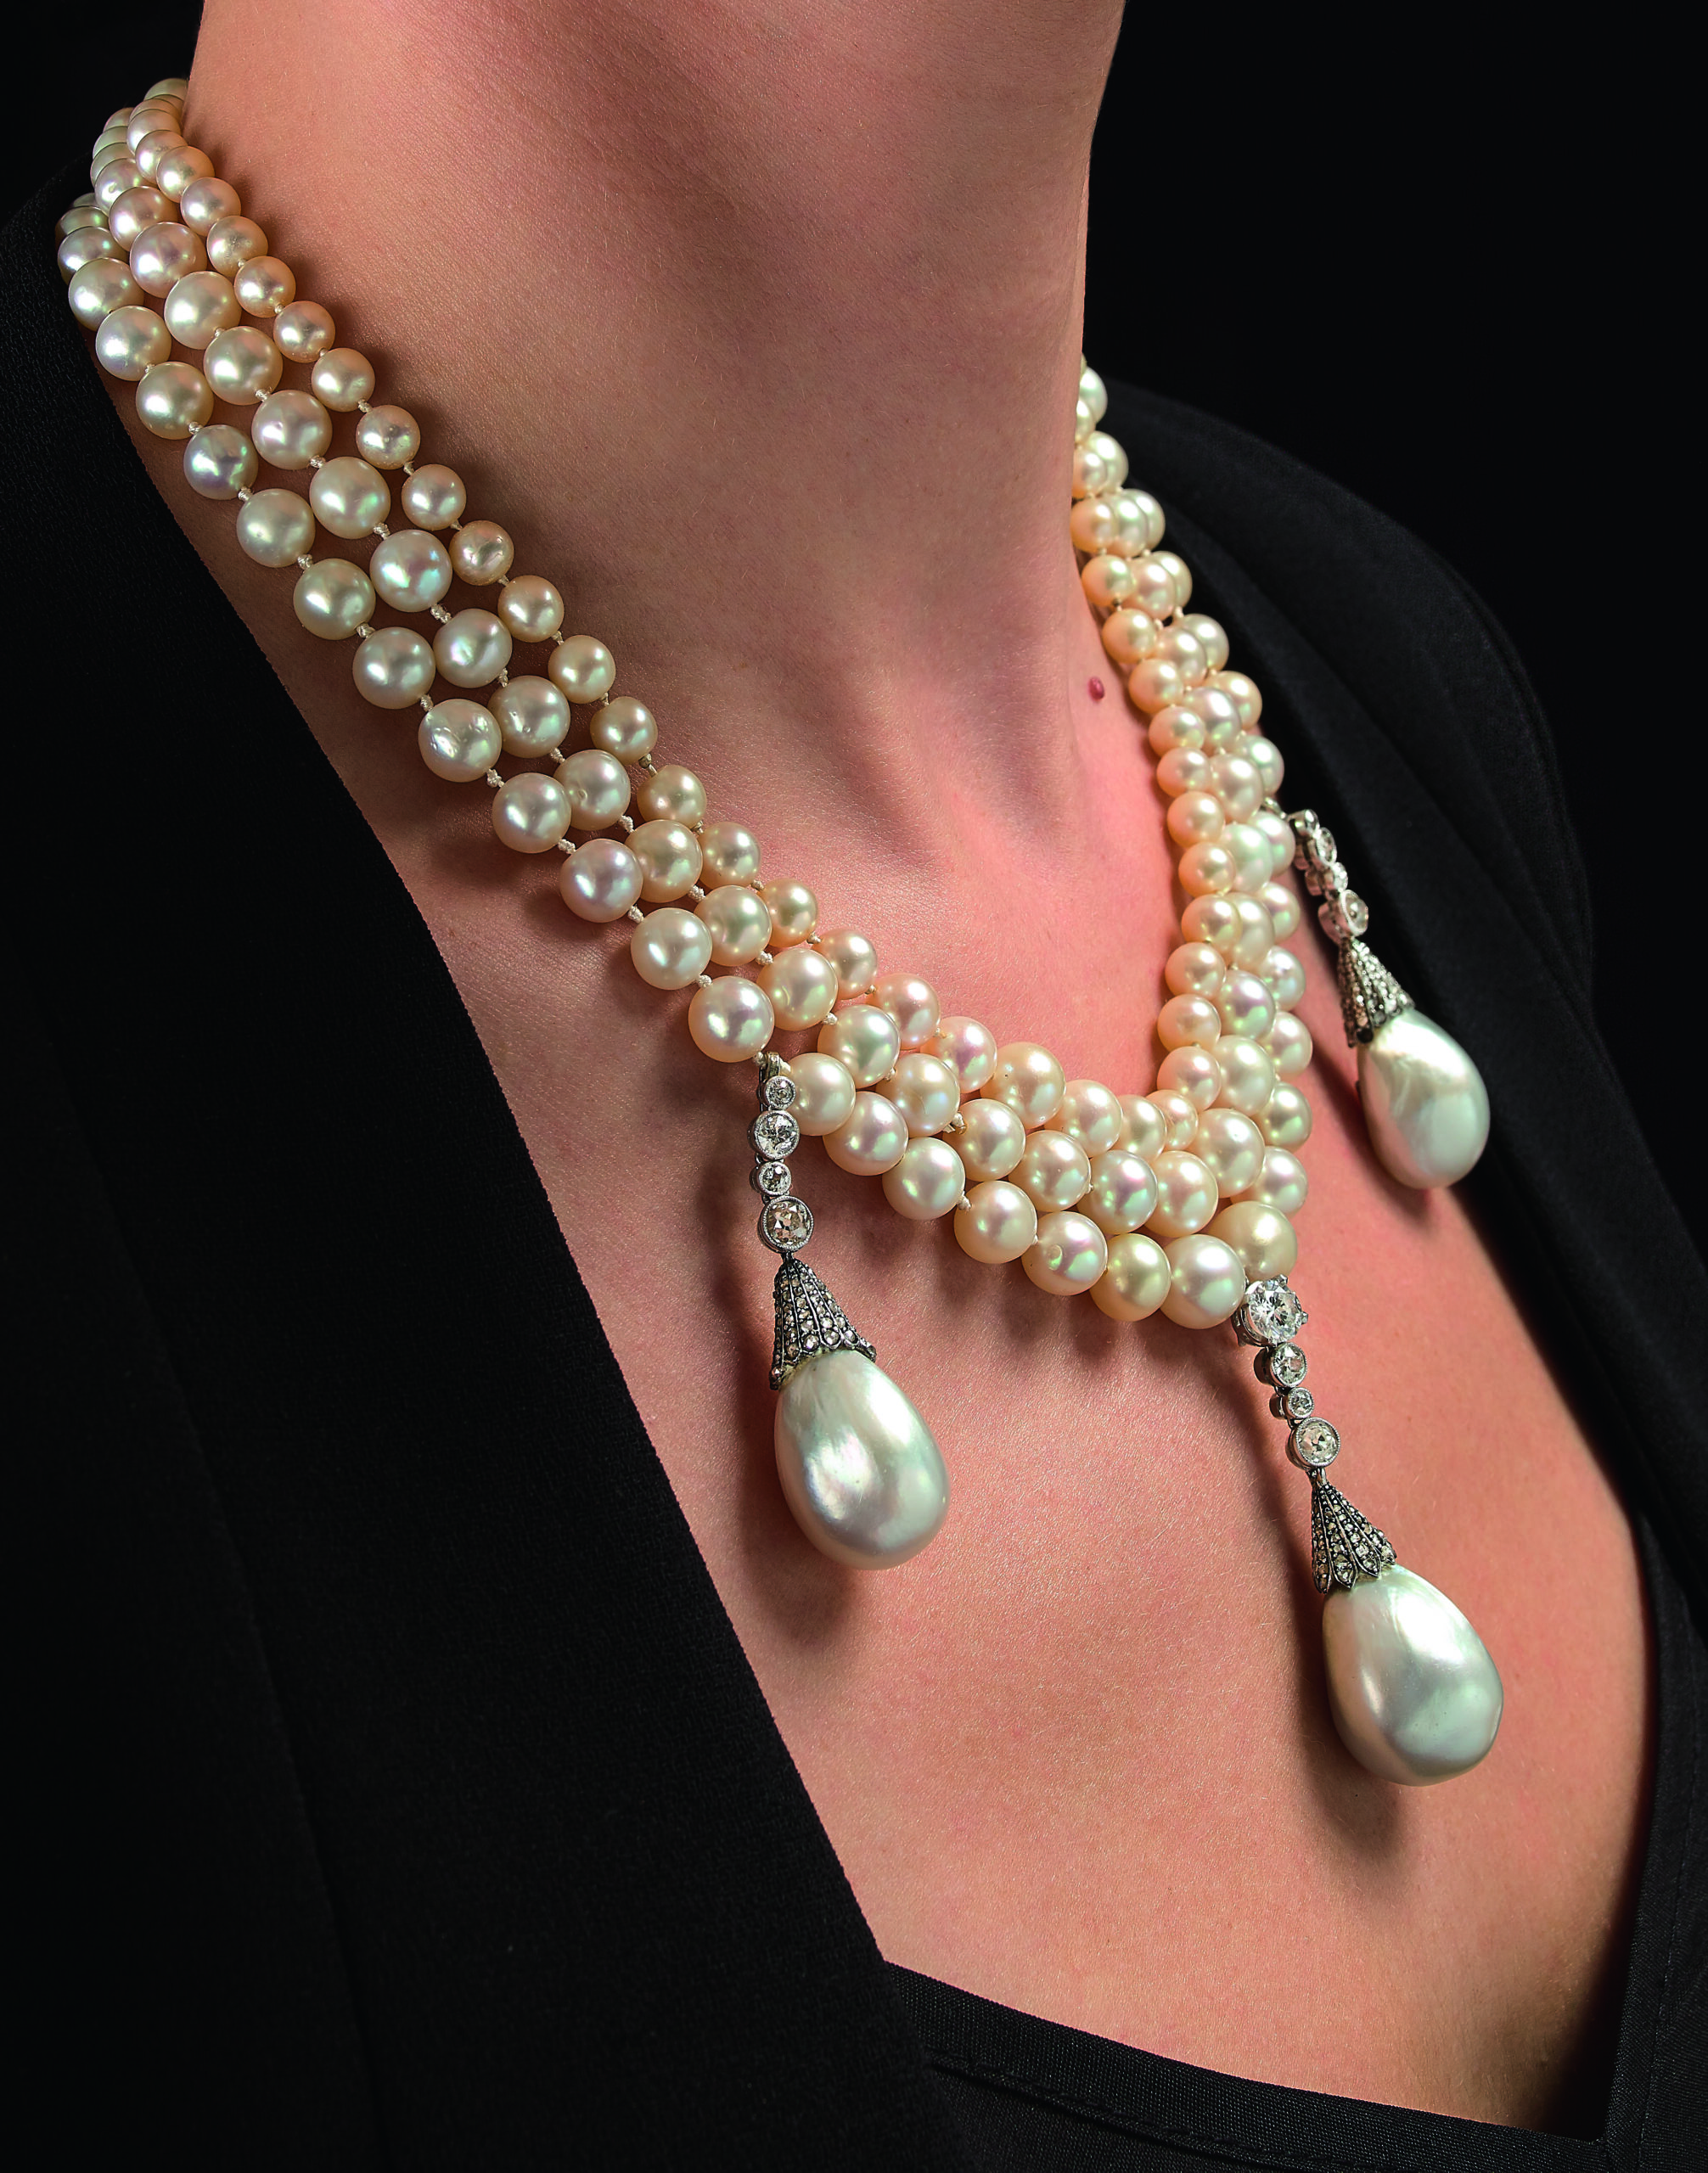 Collier et pampilles de perles fines - photo portée © archives de l'expert P. Dupré la Tour